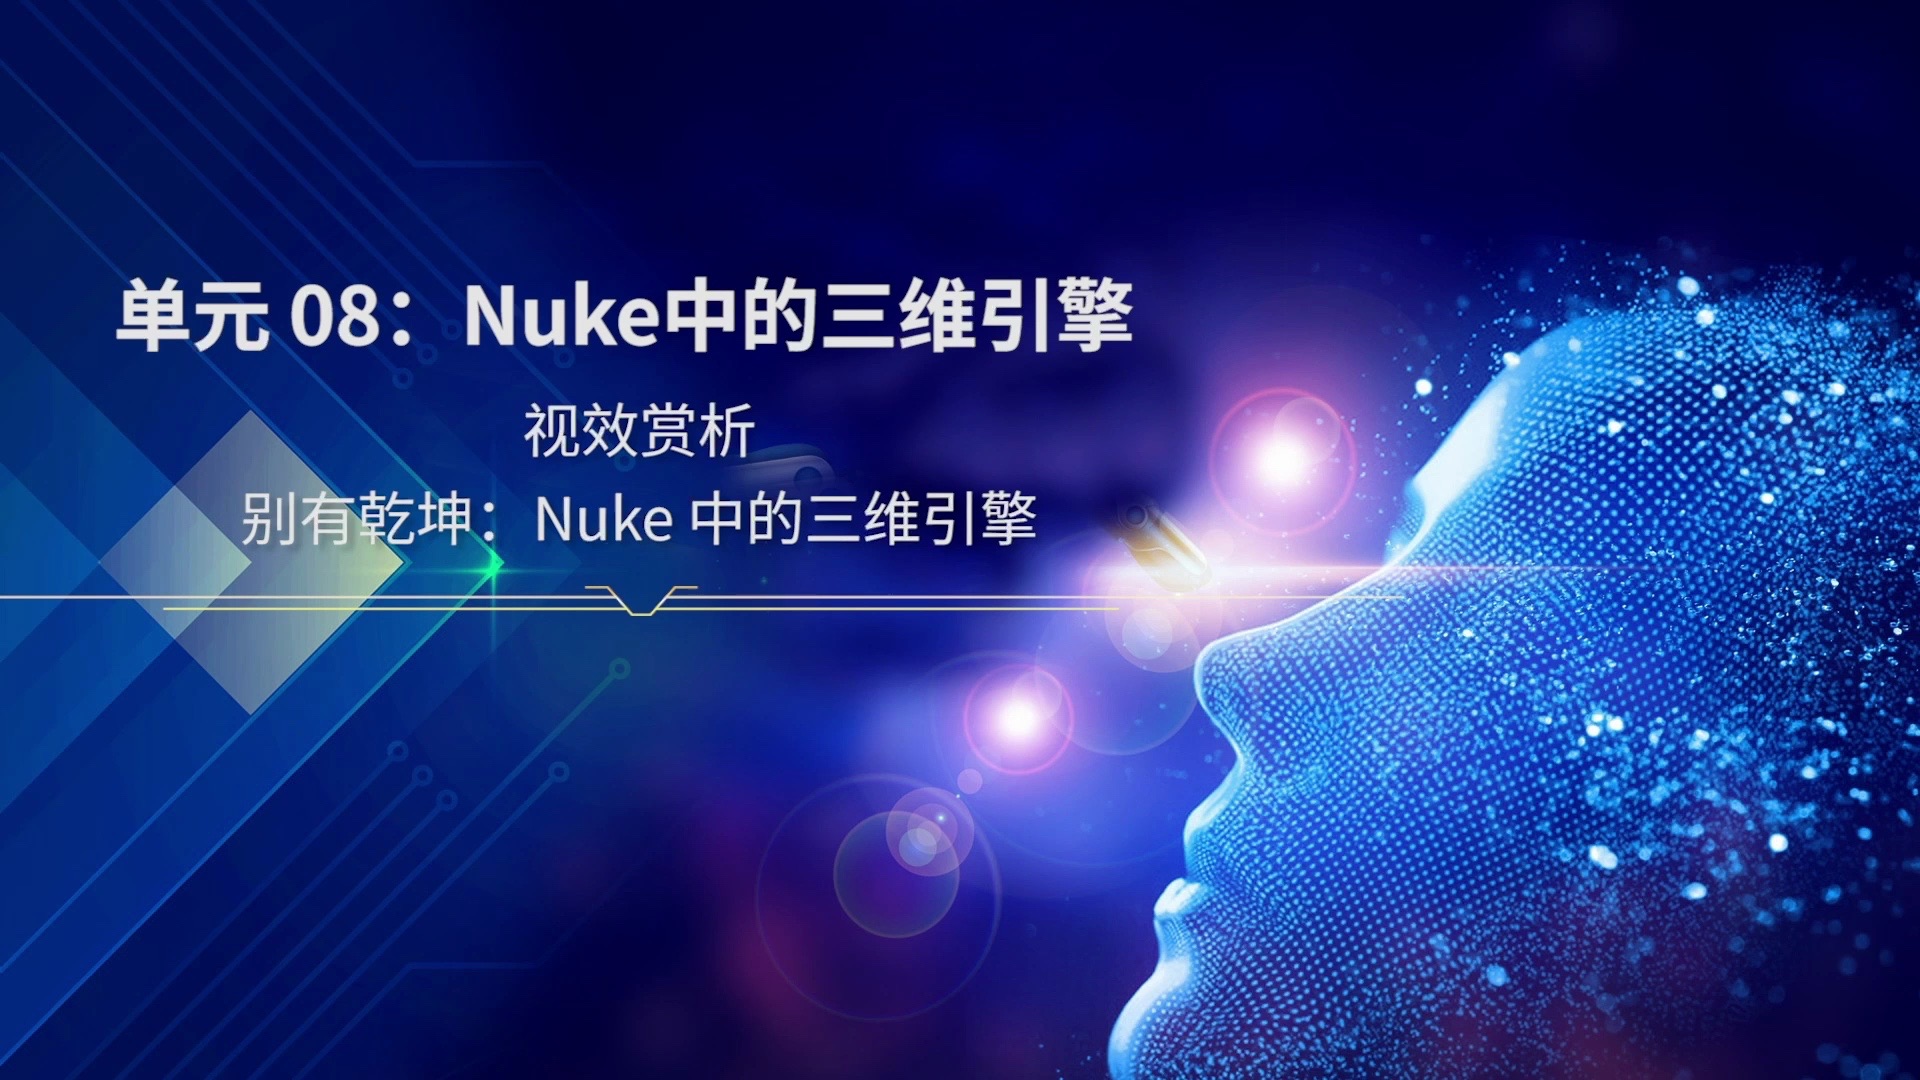 被nuke_nuke是什么意思_nuke软件